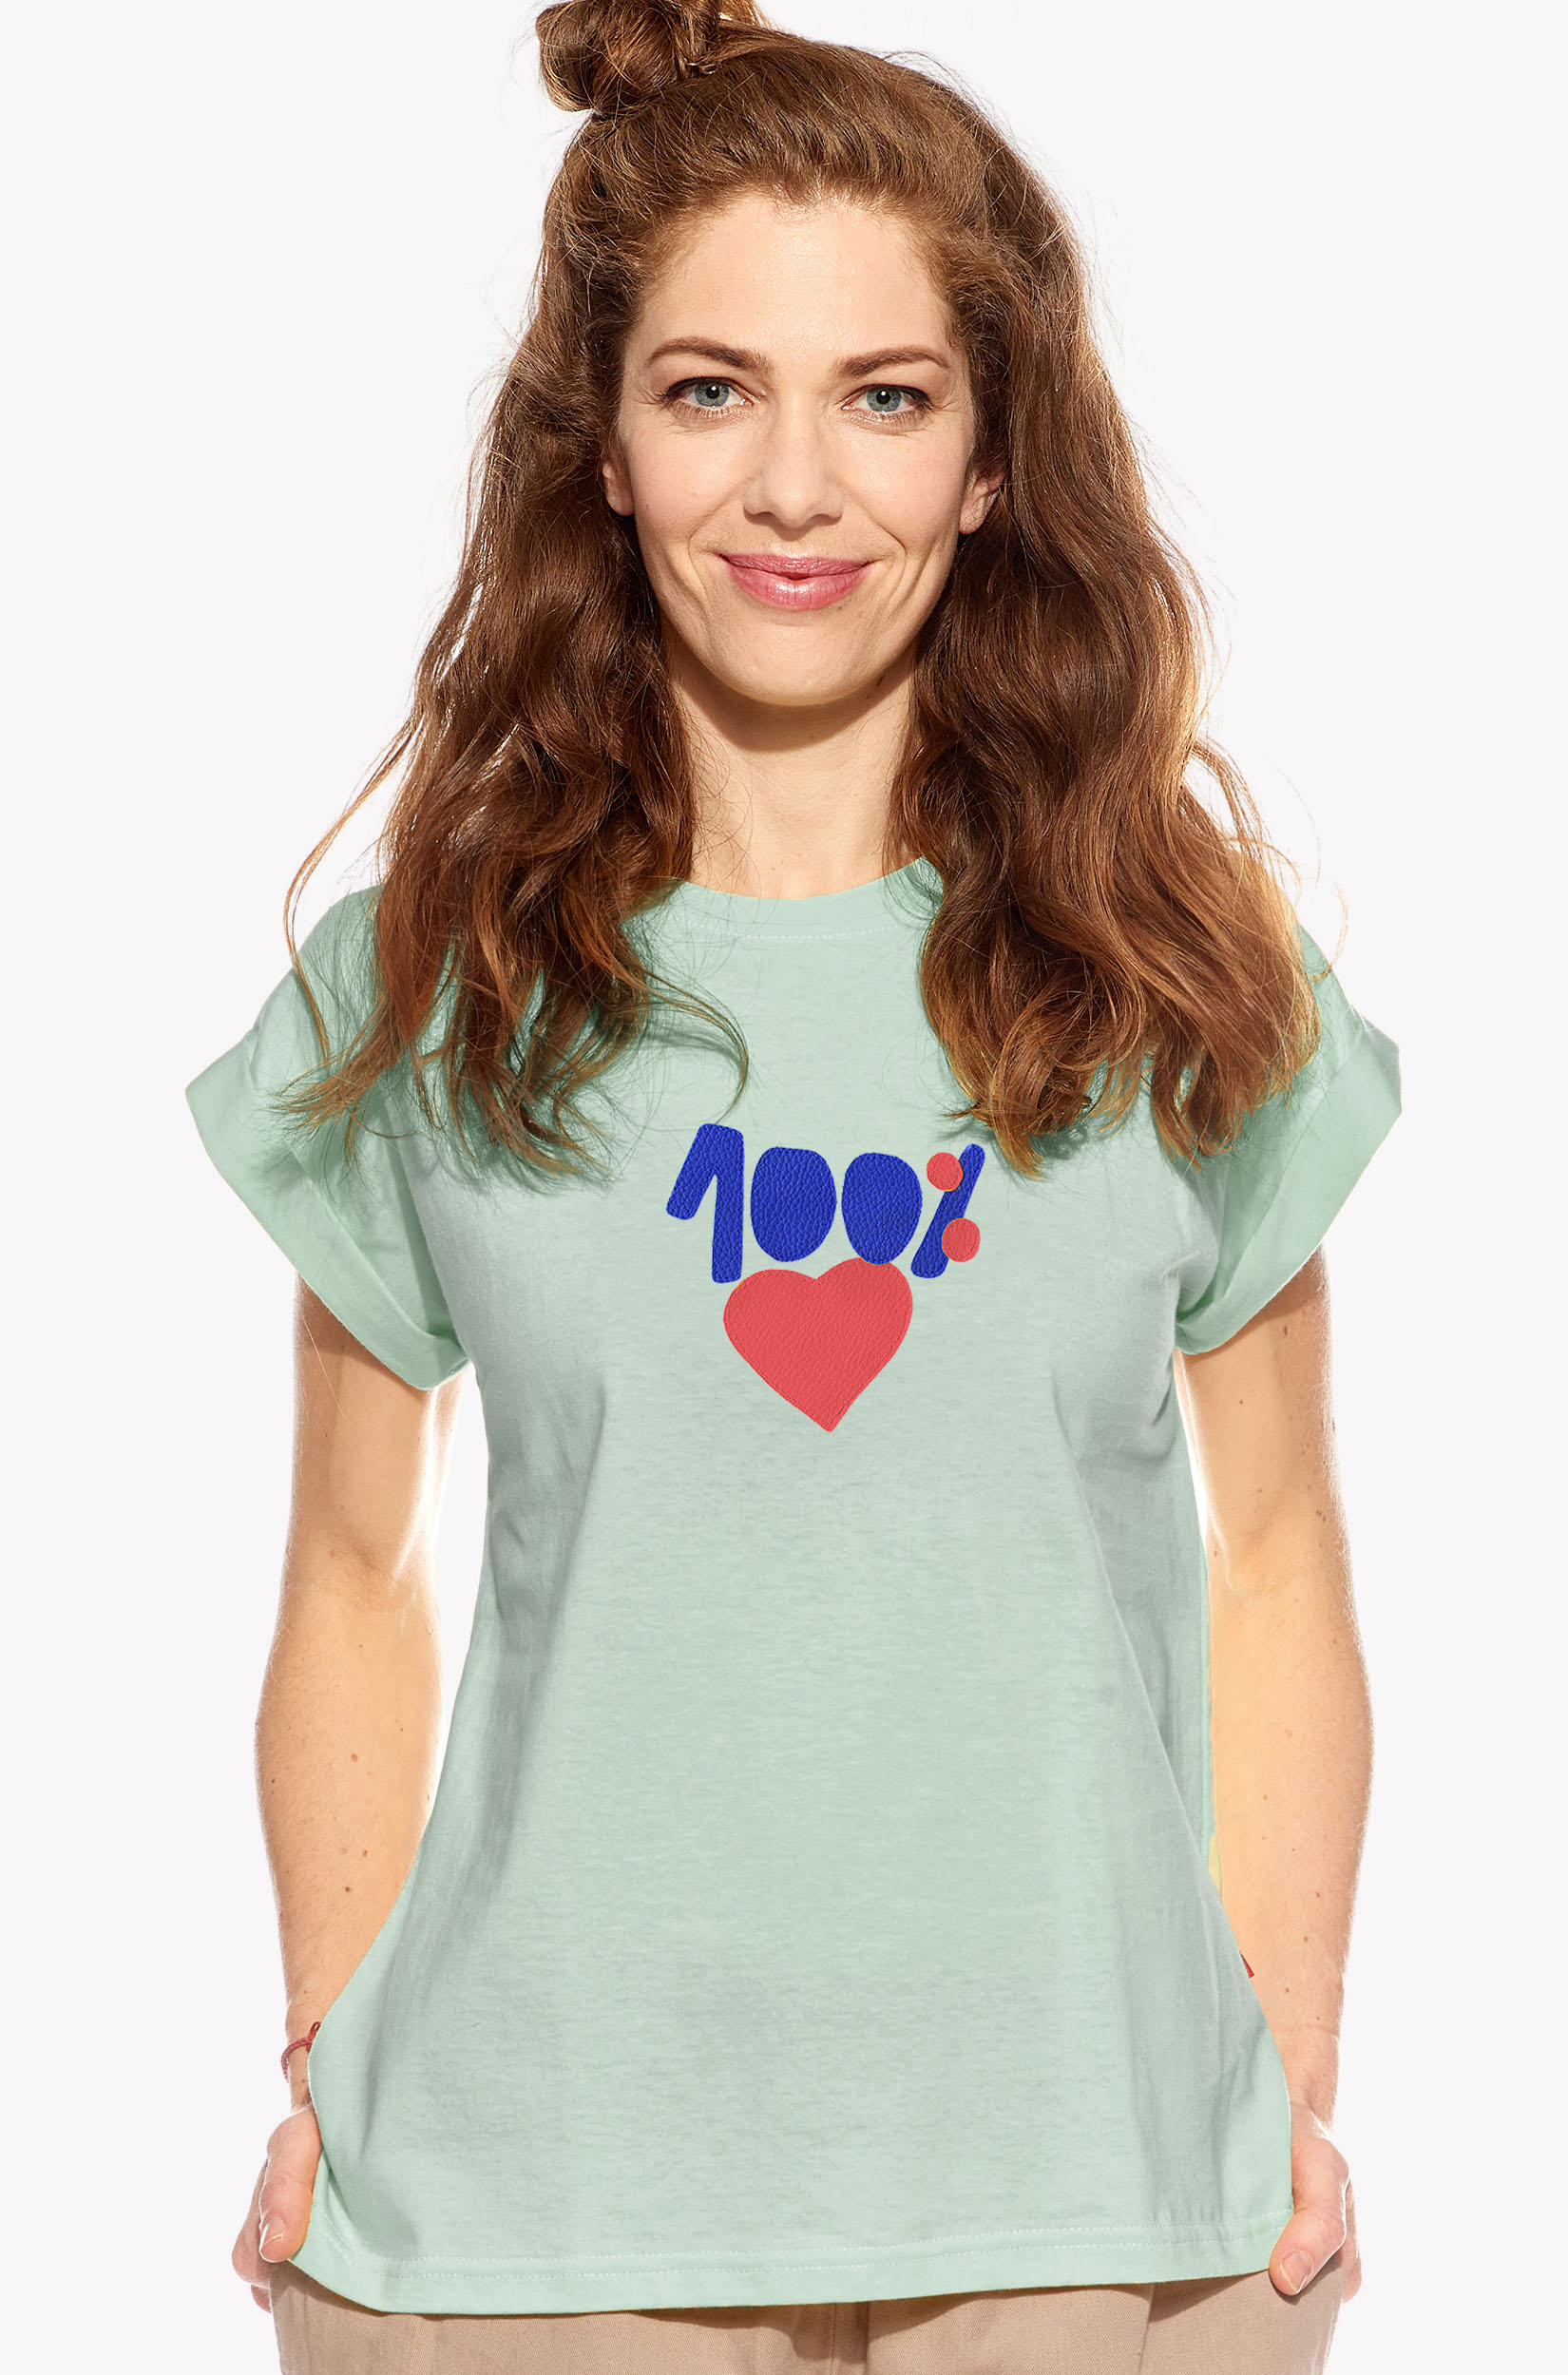 Pólók 100% szeretet